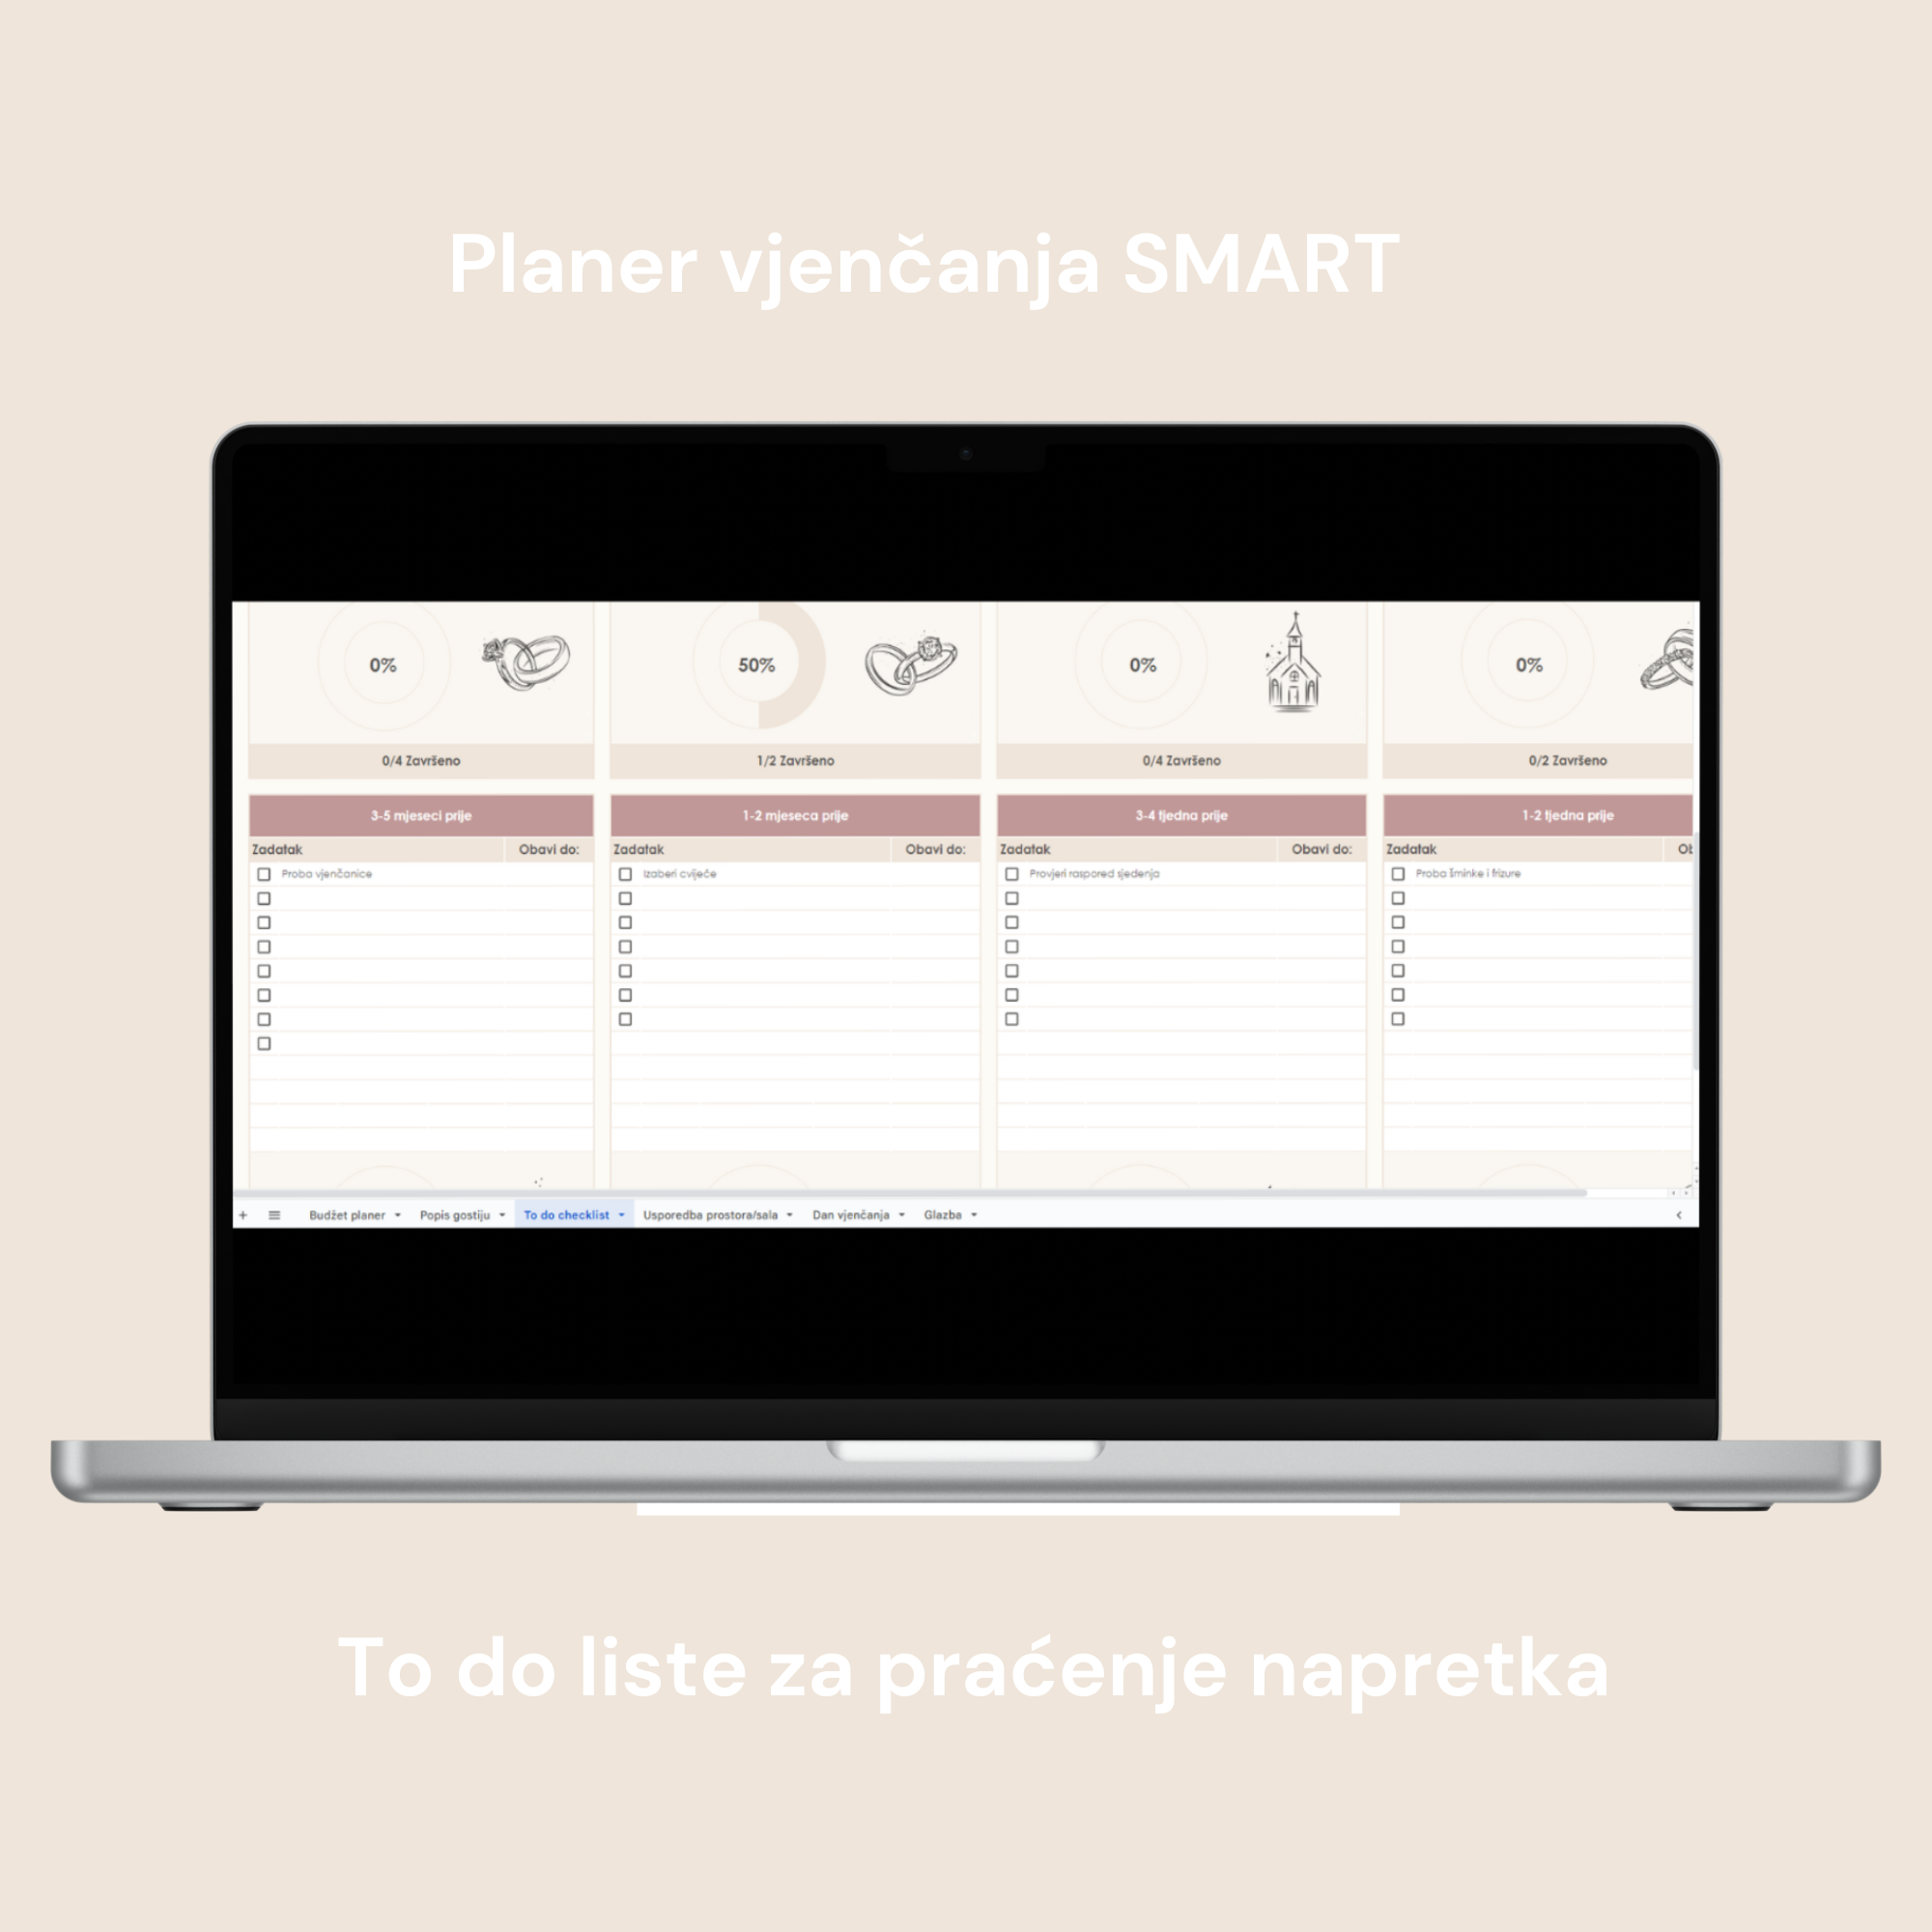 Planer vjenčanja SMART digitalni planer za google doc, to do liste za praćenje obavljenih zadataka i napretka sa ilustracijama